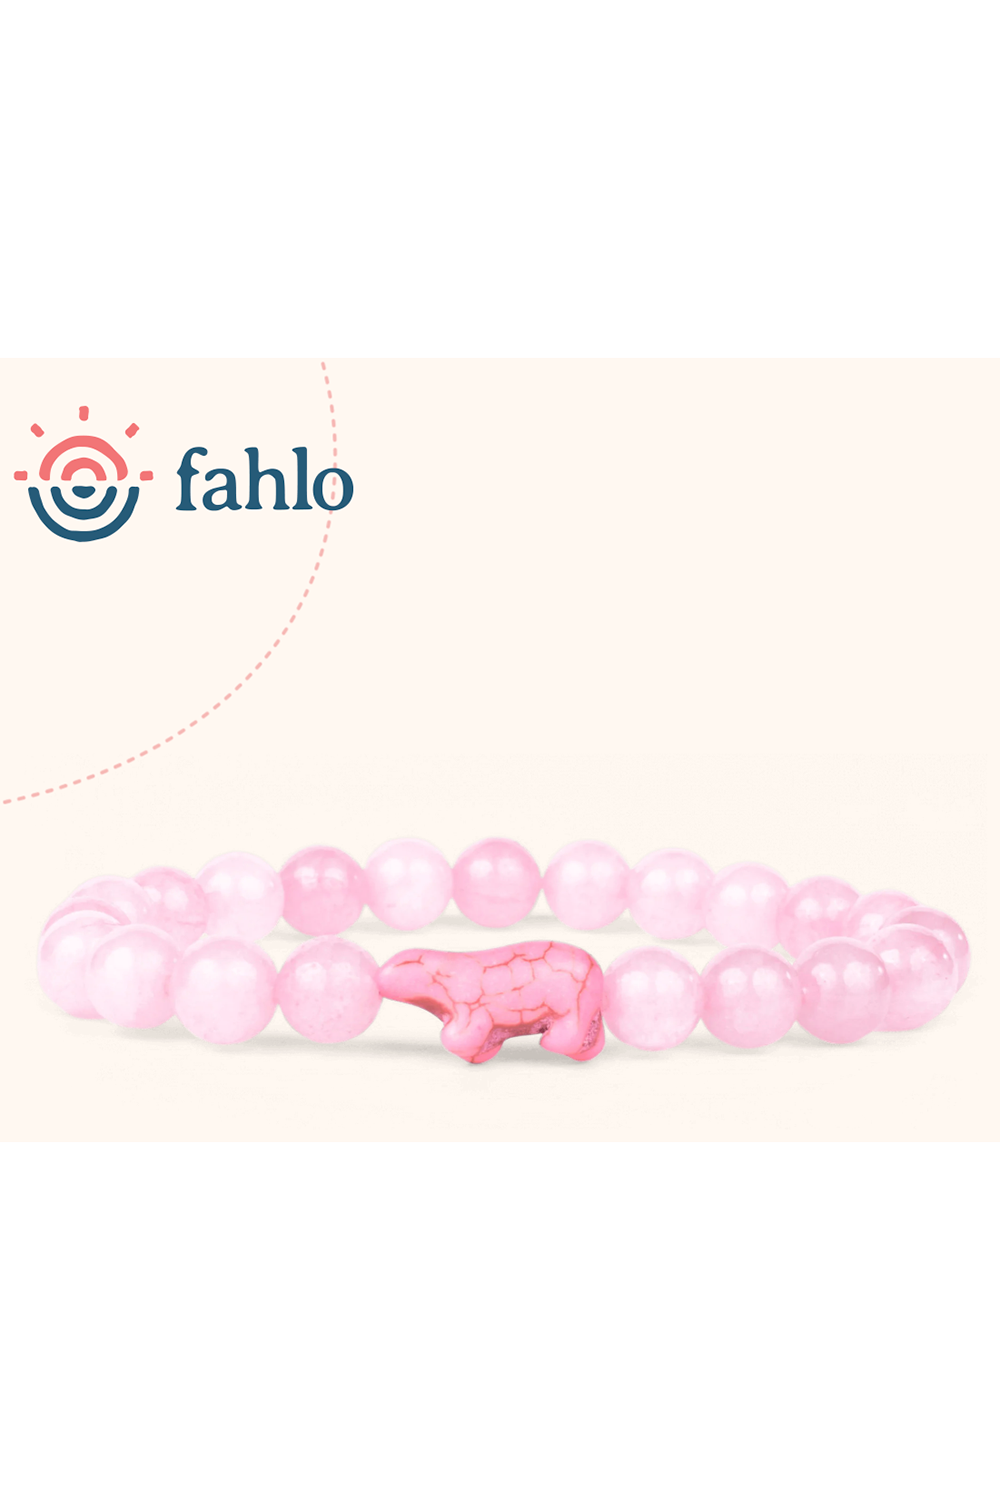 Fahlo Venture Bracelet - Northern Light Pink